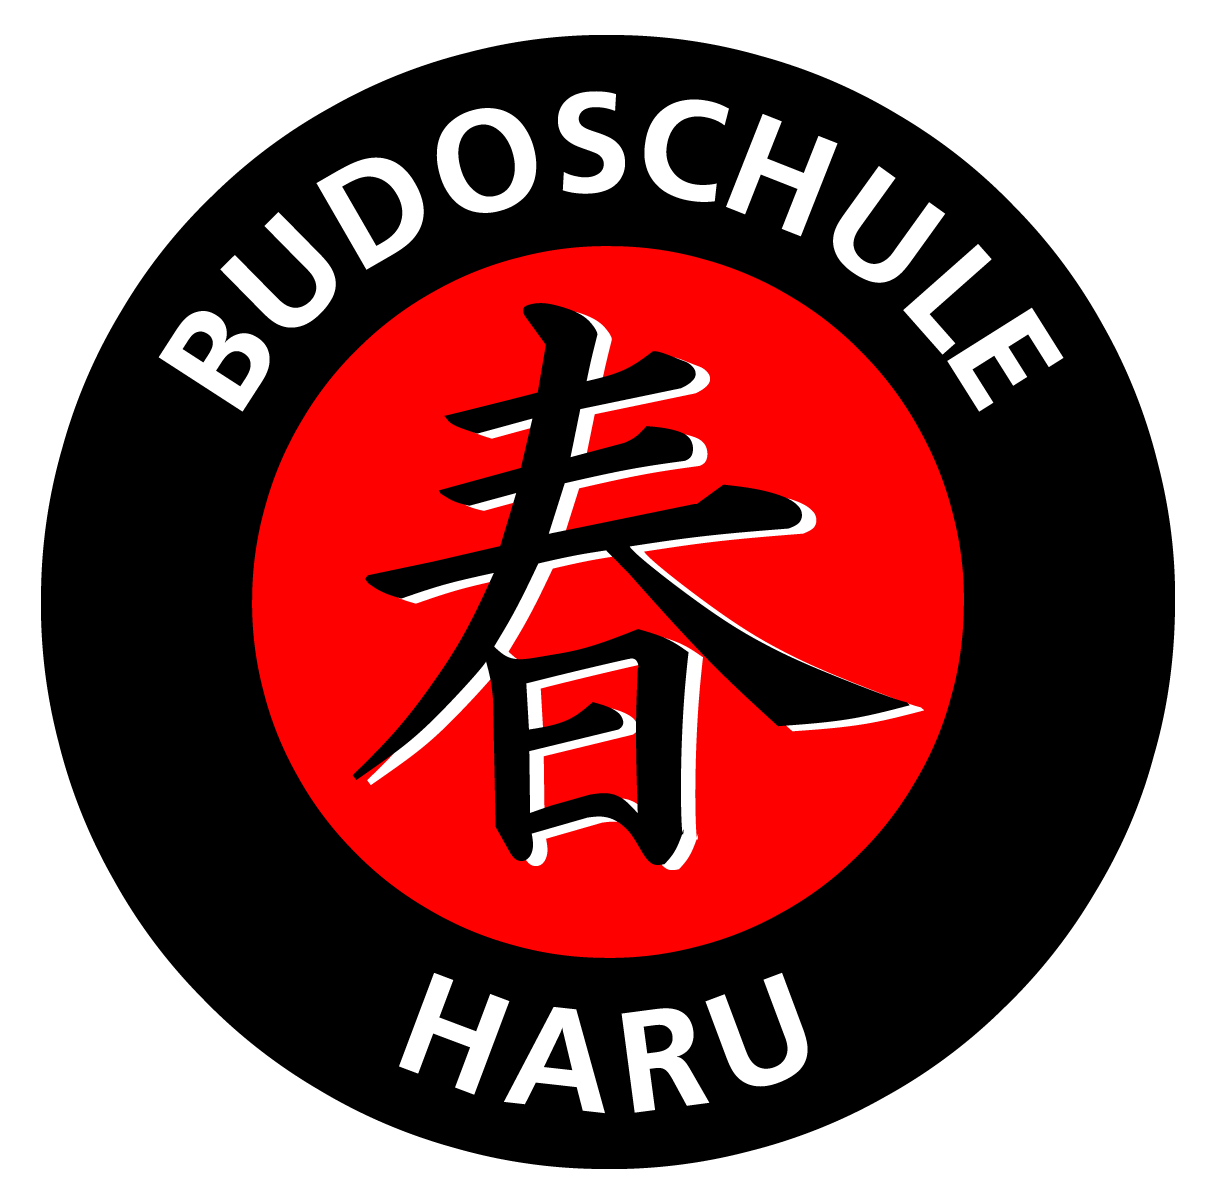 Budoschule Haru